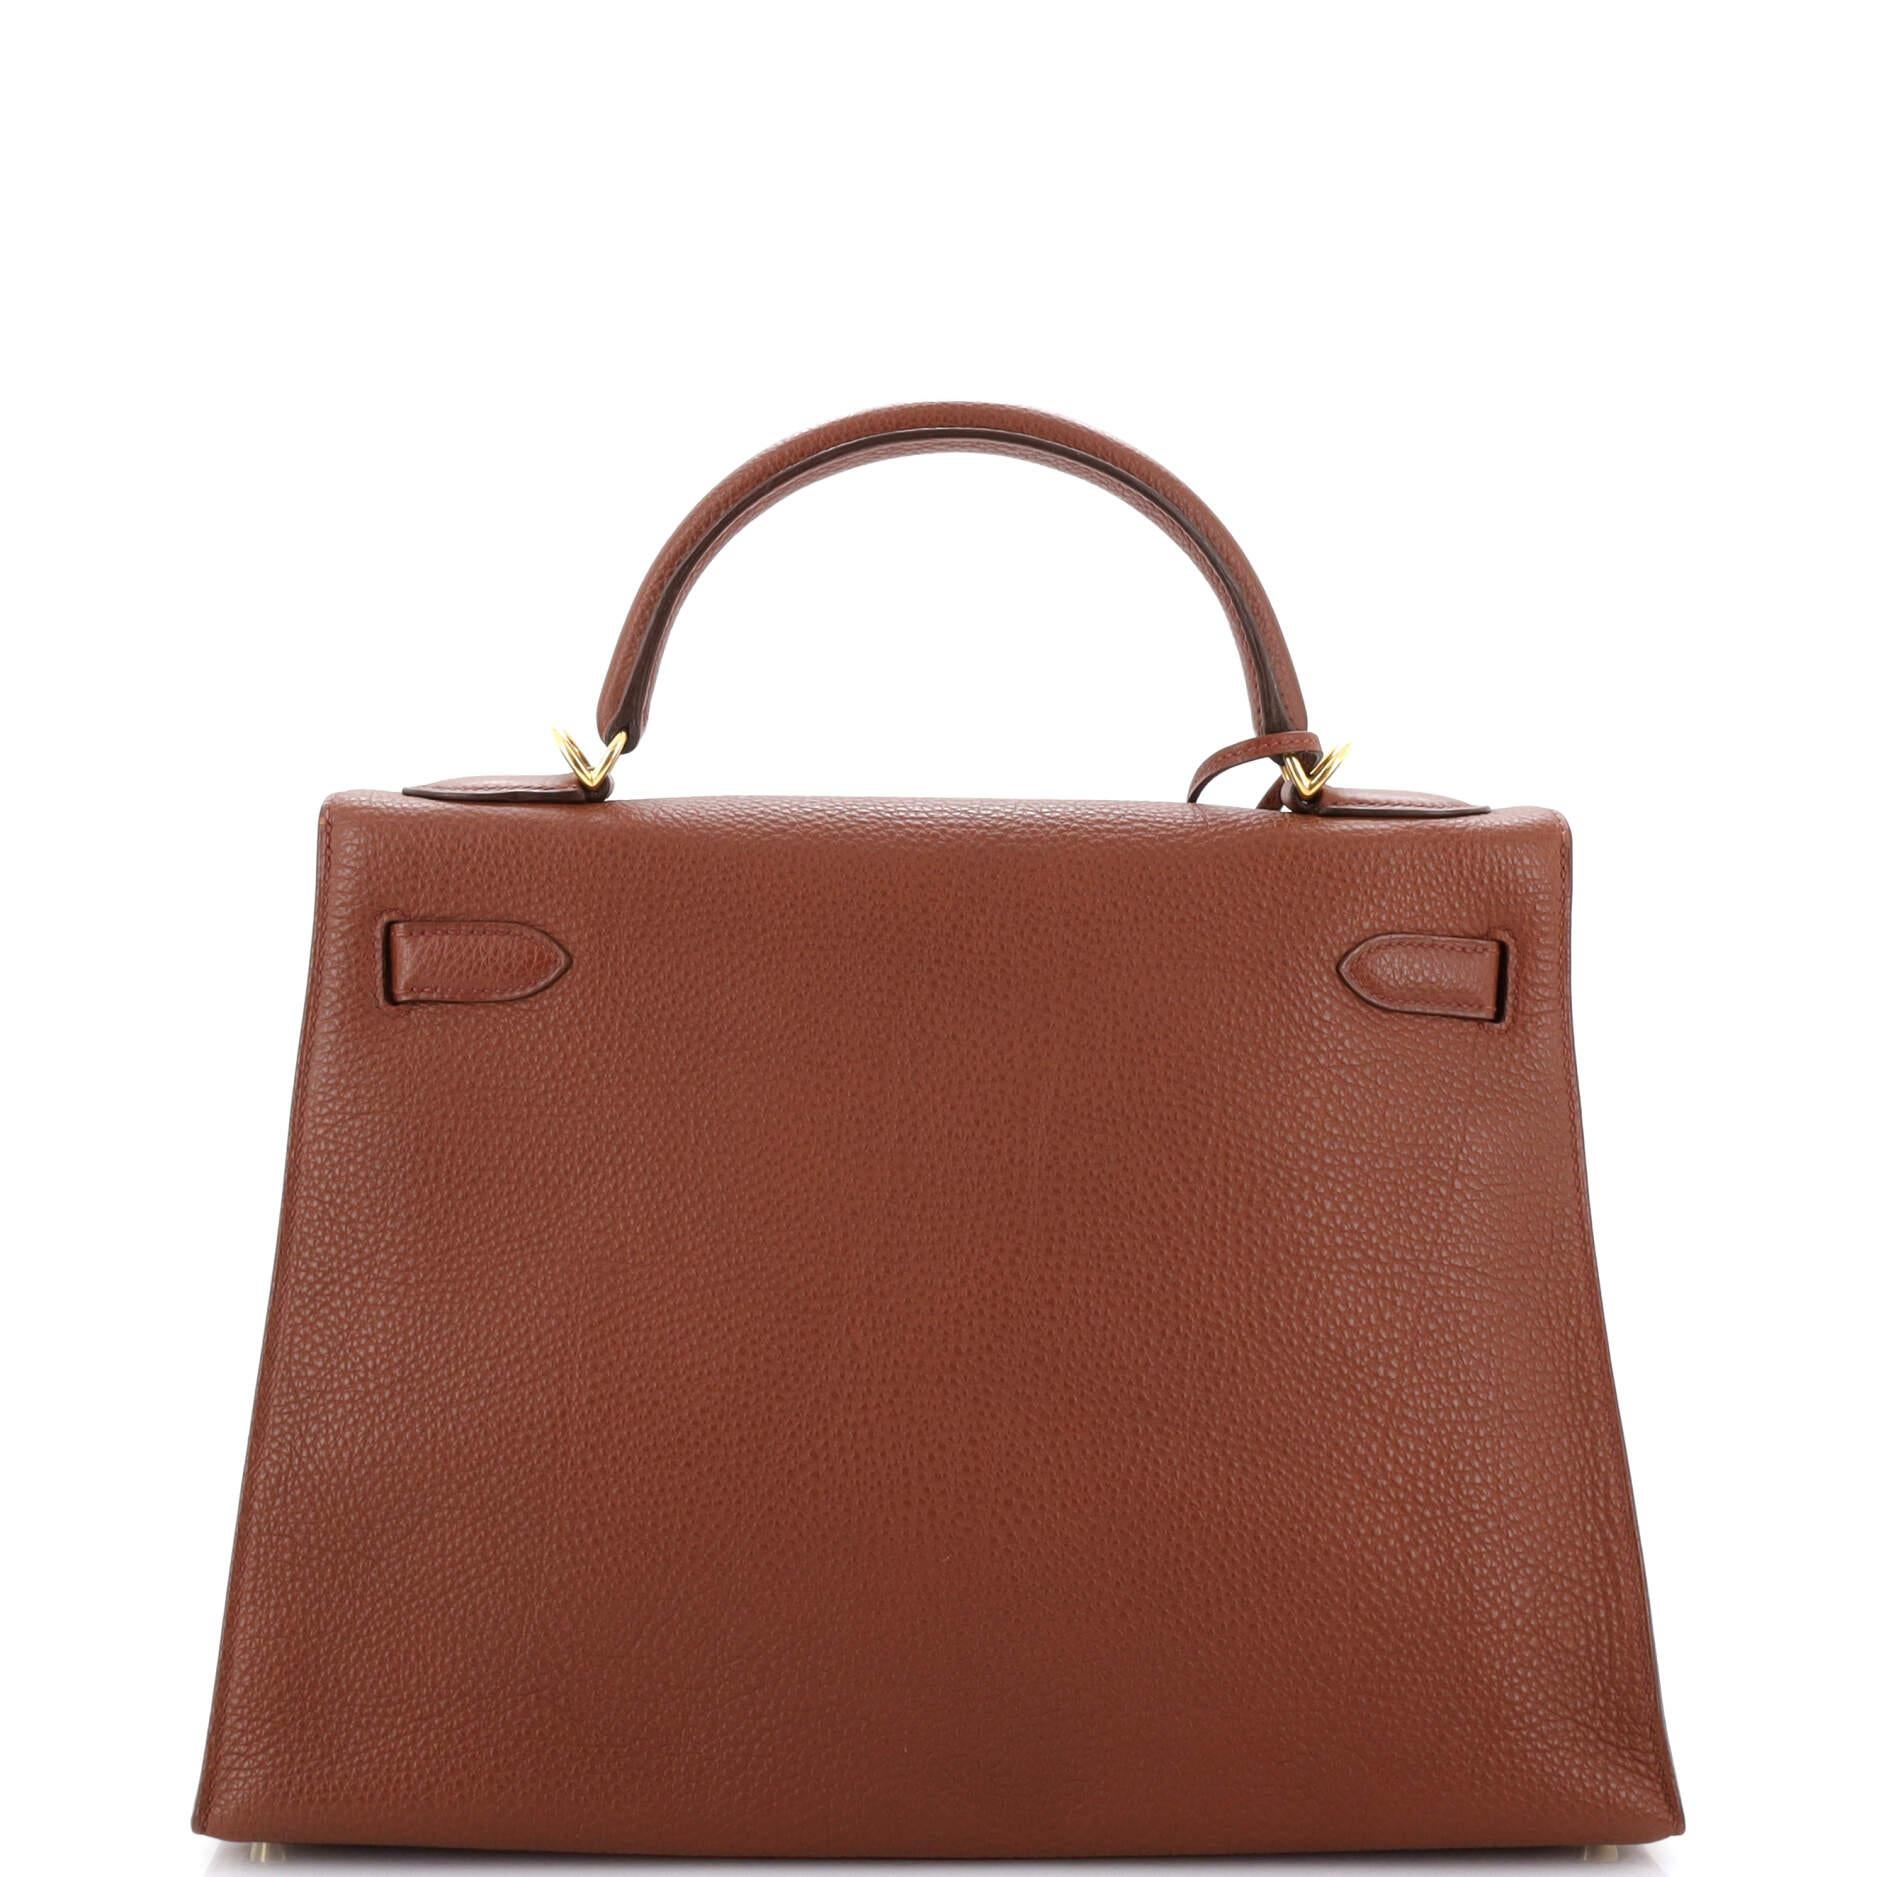 Women's or Men's Hermes Kelly Handbag Brique Togo with Gold Hardware 32